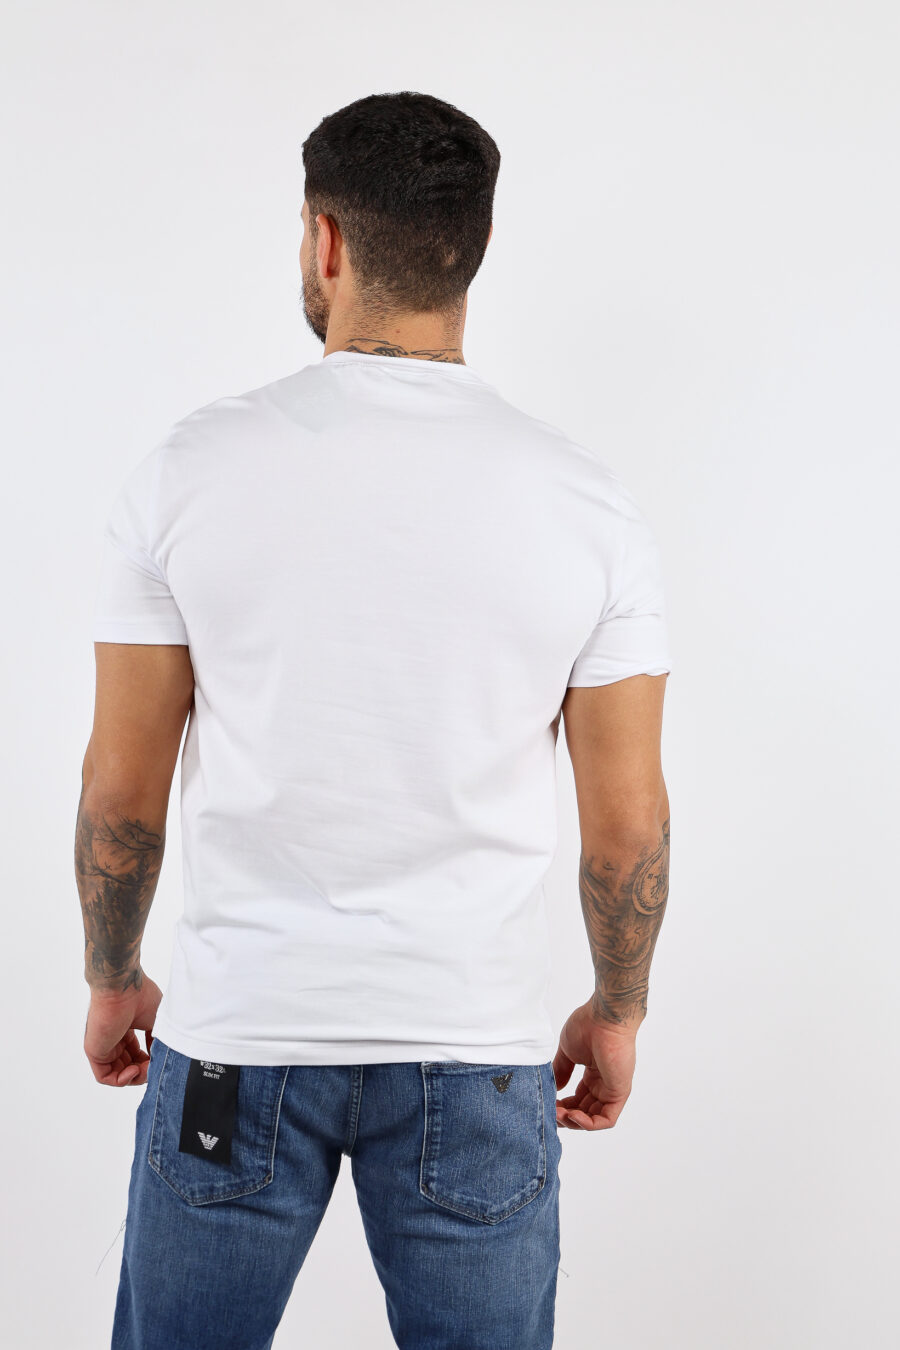 T-shirt blanc avec maxilogo "lux identity" argenté - BLS Fashion 23